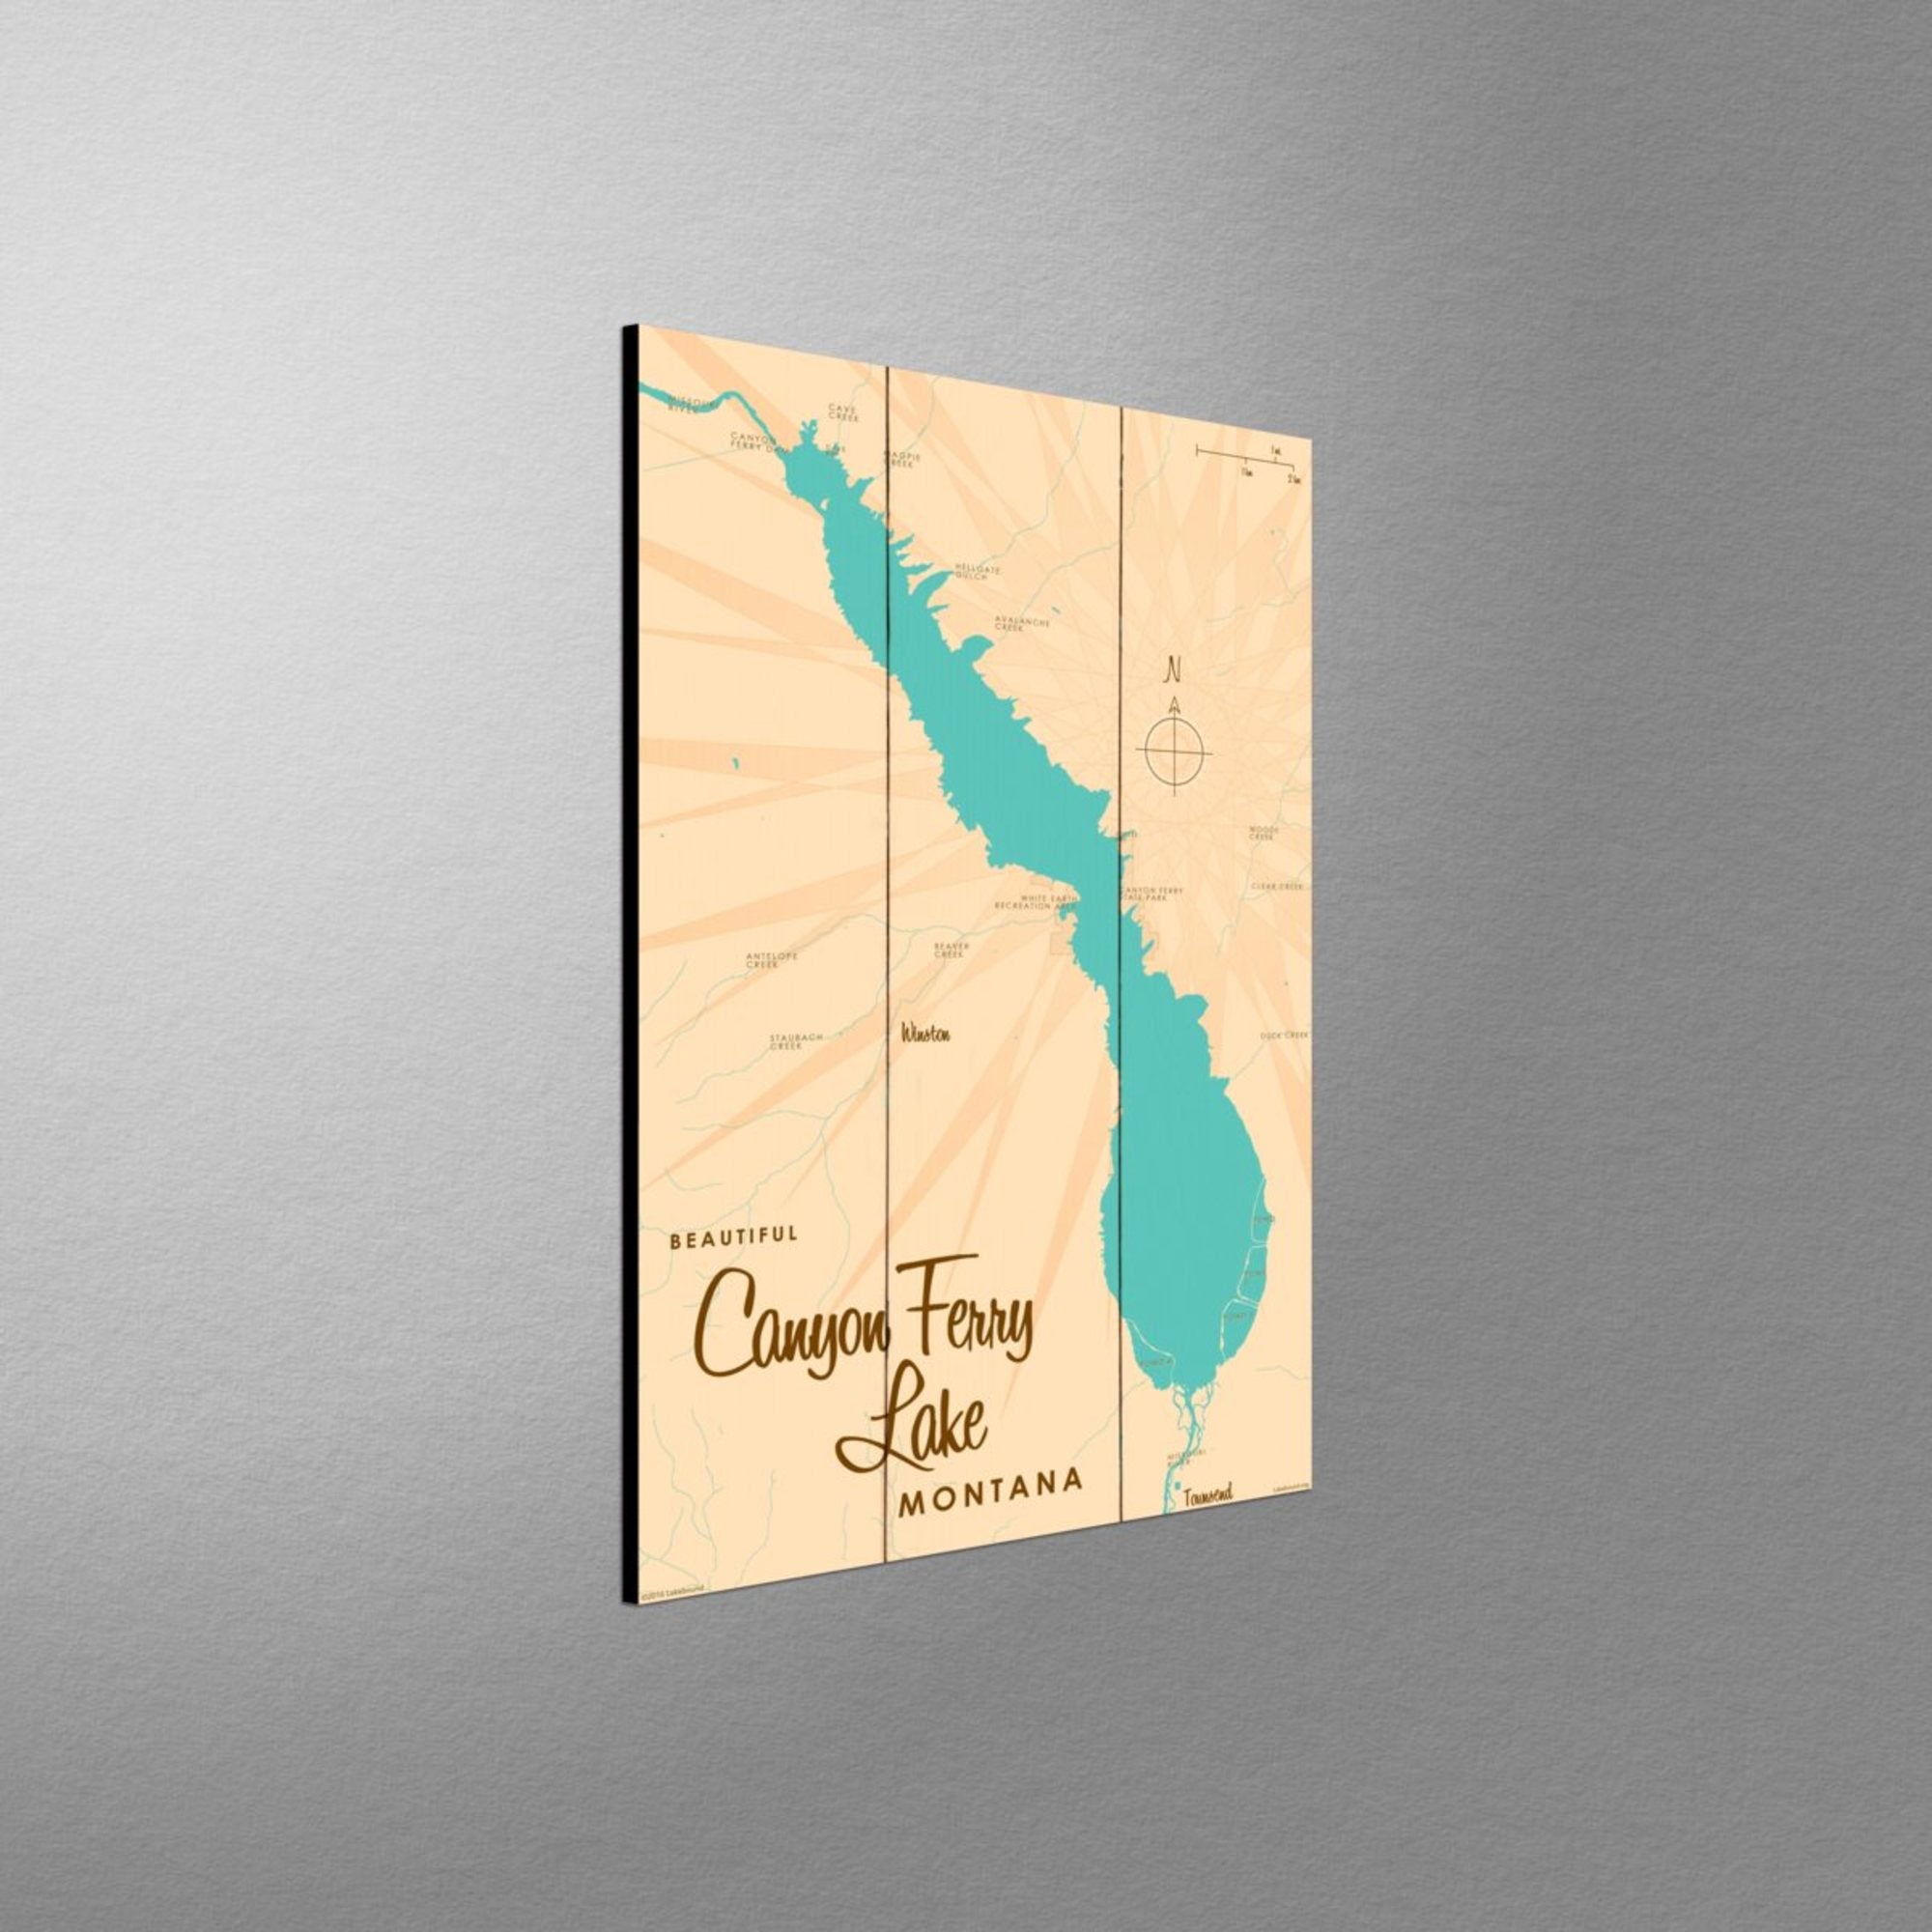 Canyon Ferry Lake Montana, Wood Sign Map Art